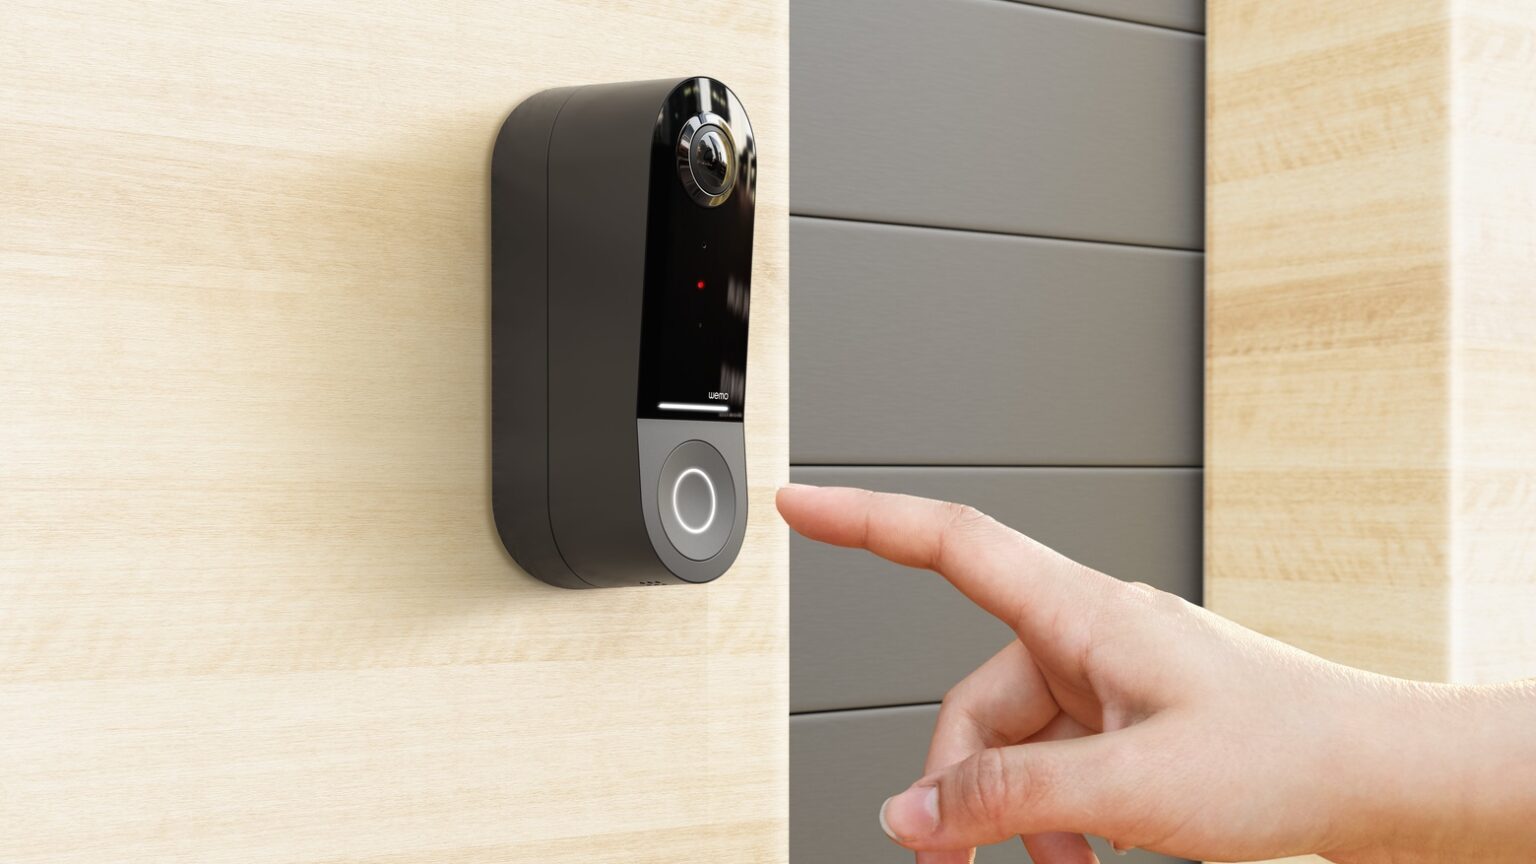 Belkin’s new HomeKit-compatible video doorbell includes high-res camera